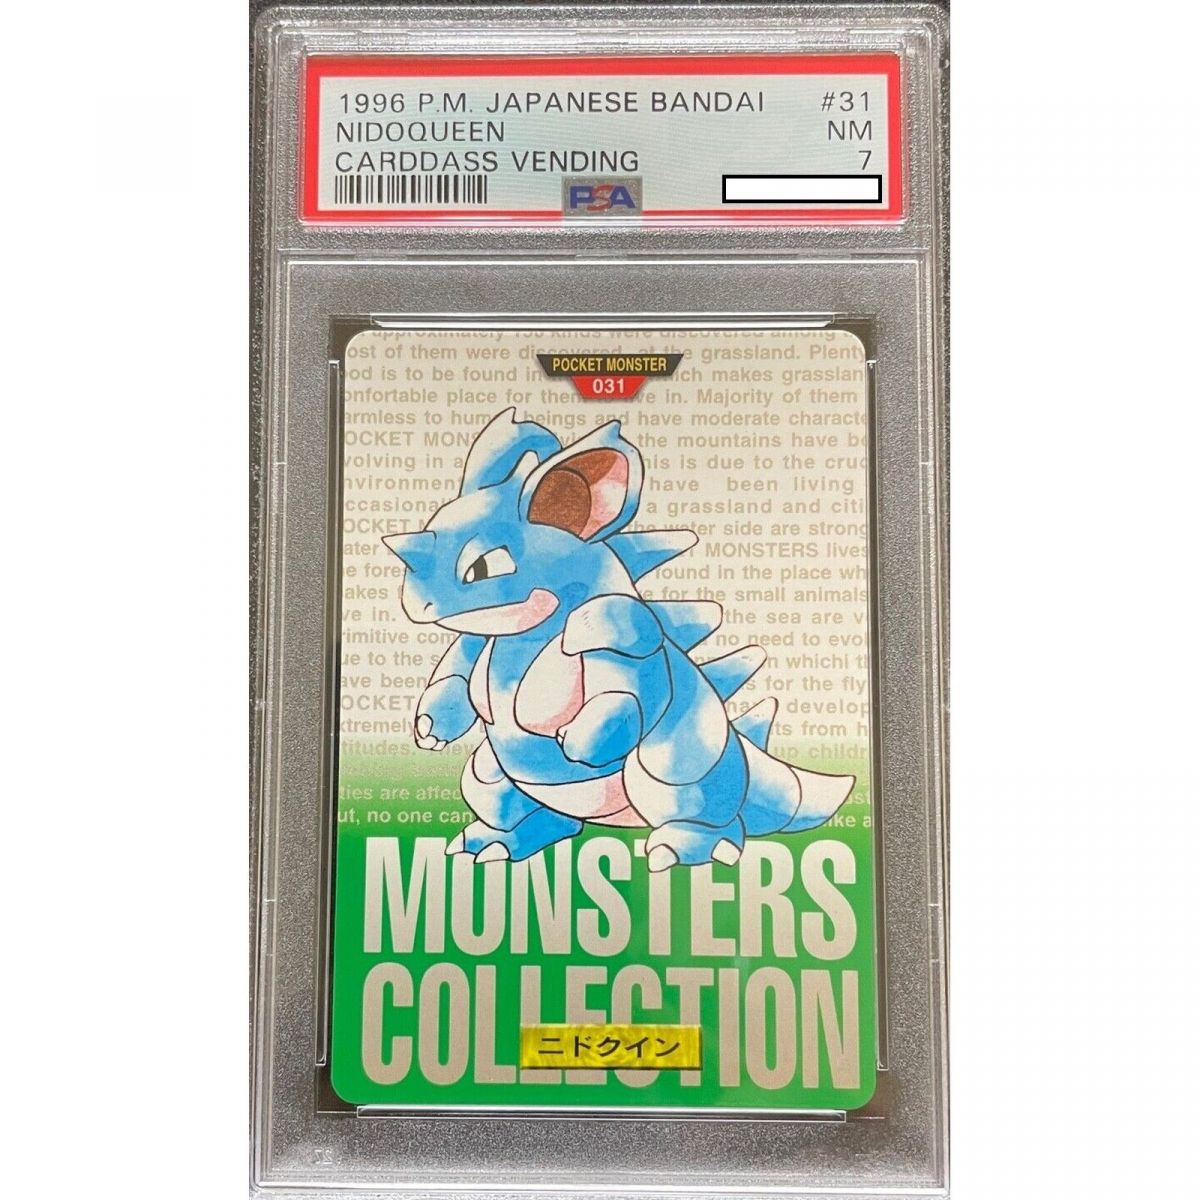 Pokémon - Carte Gradée - Nidoqueen 031 Carddass Vending 1996 Japonais [PSA 7 - Near Mint]